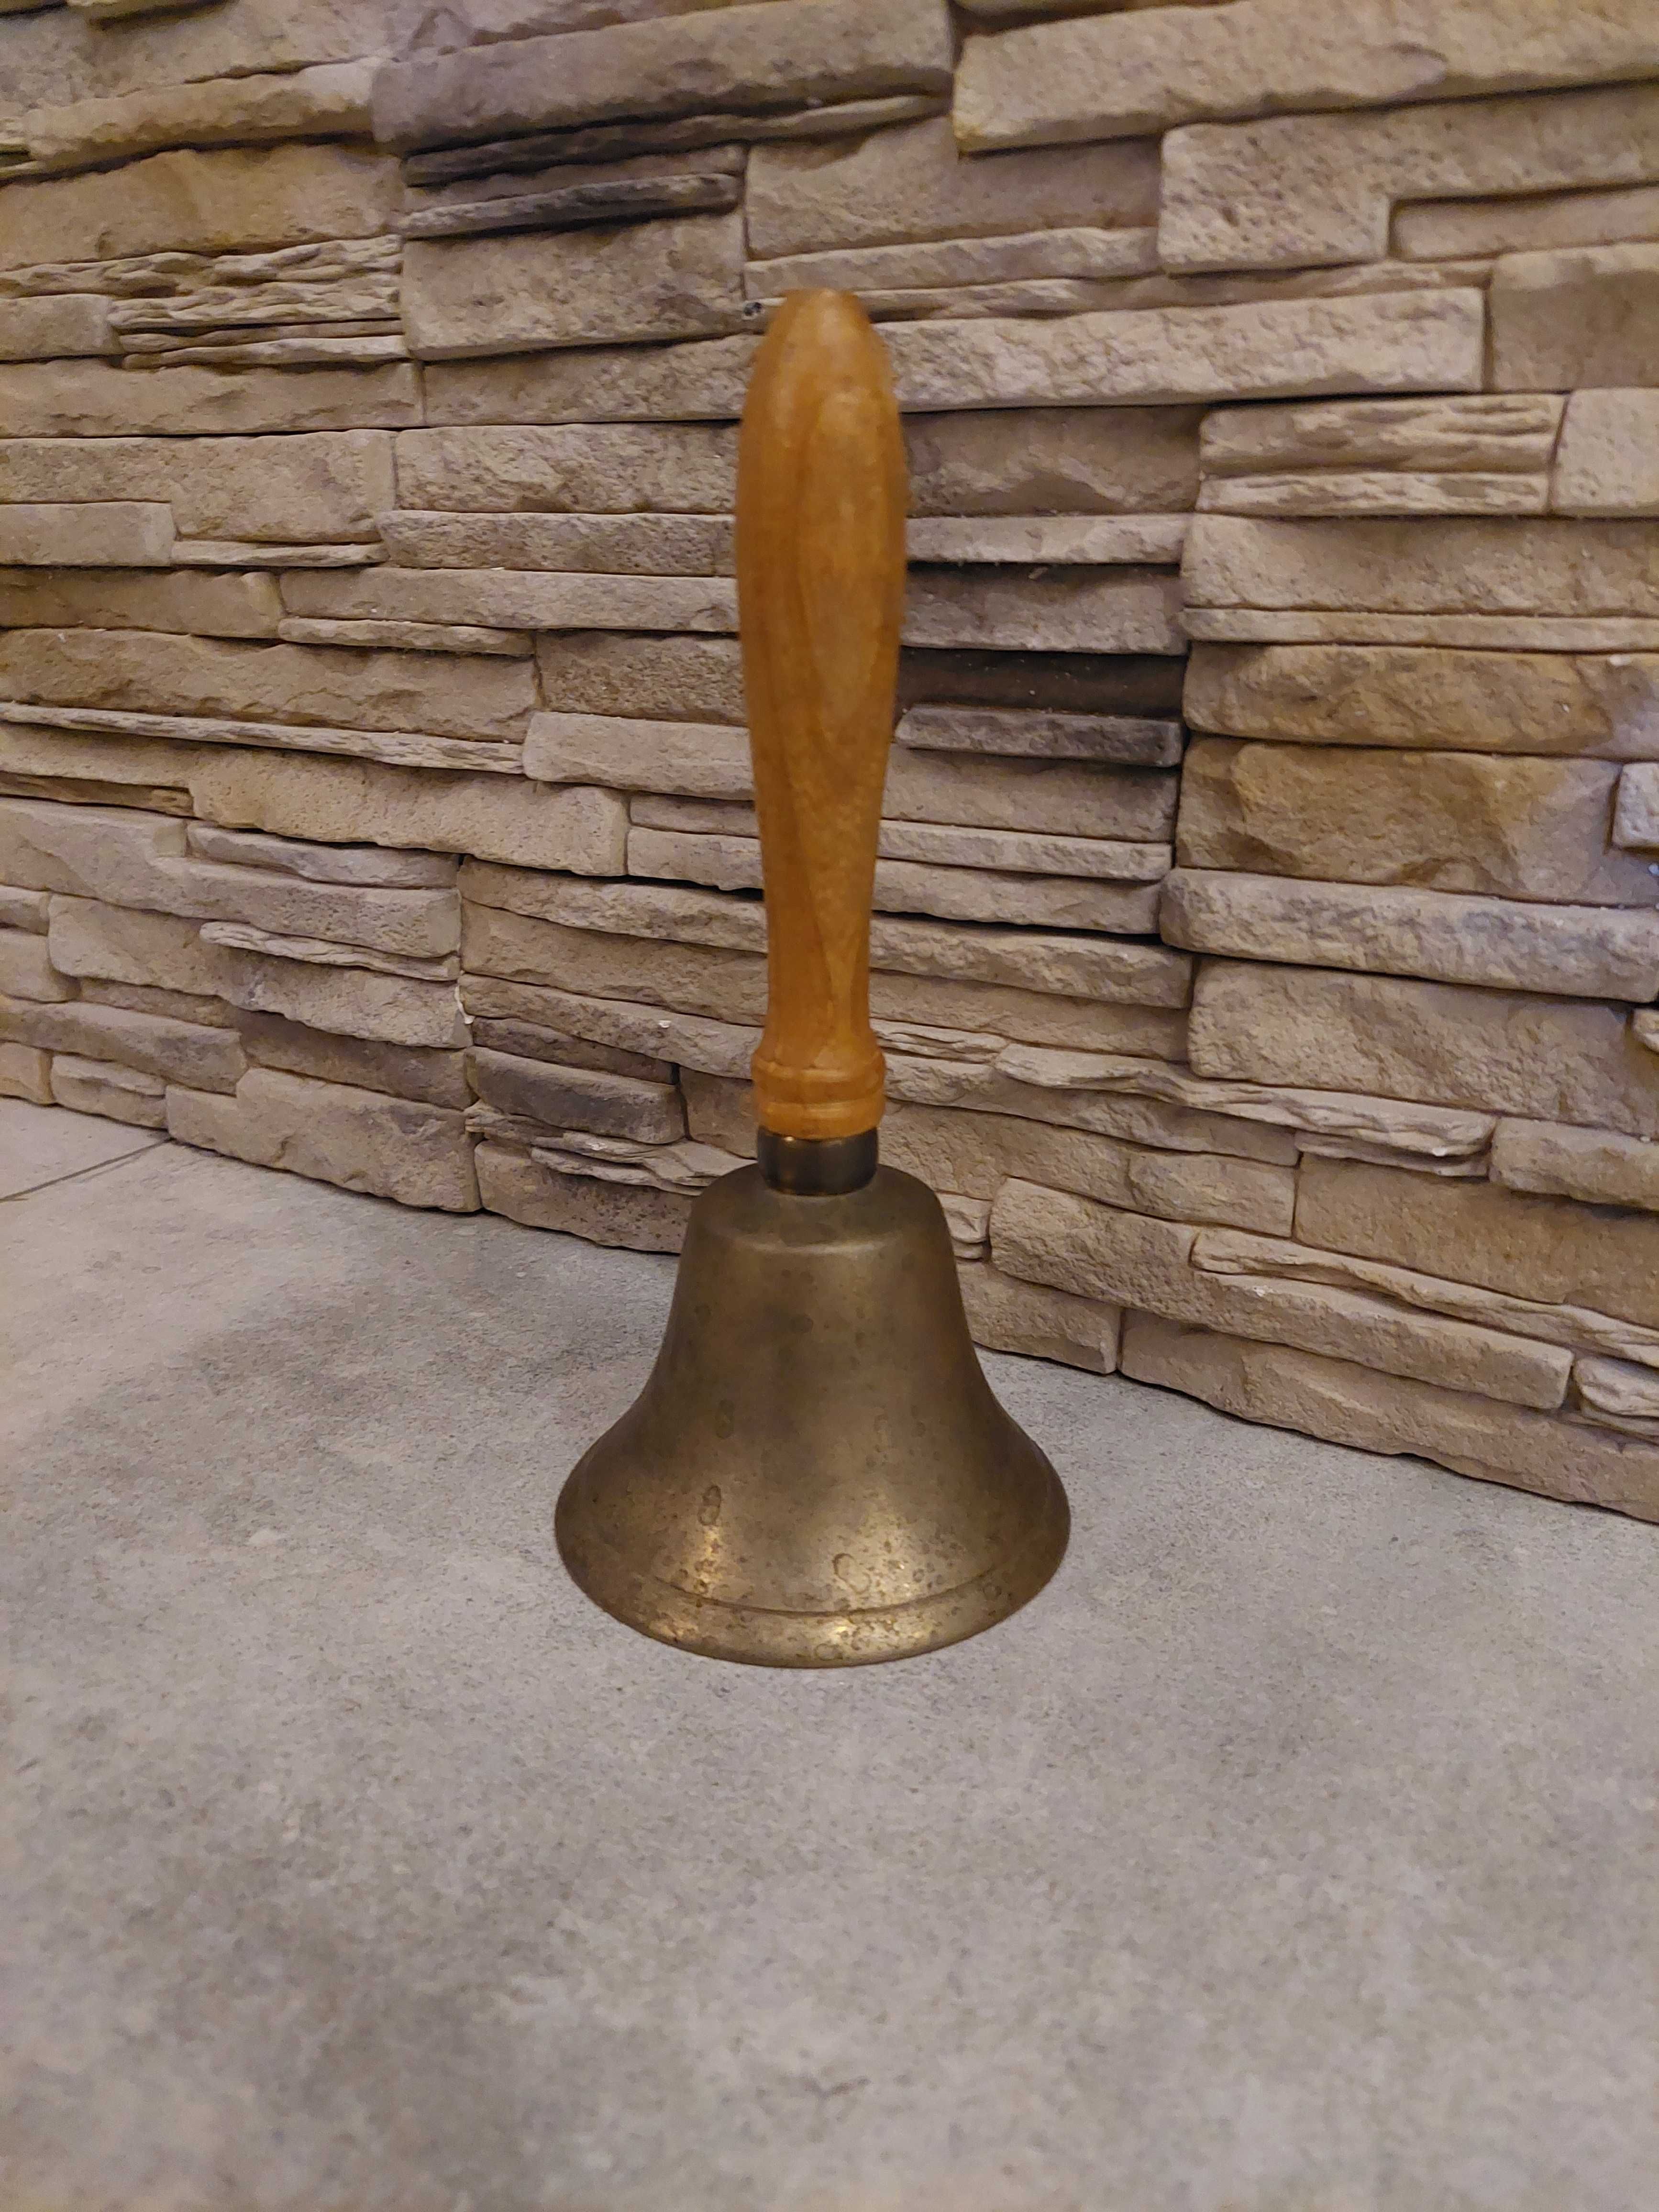 Dzwon mosiężny, stary dzwon, dzwonek z drewnianym uchwytem